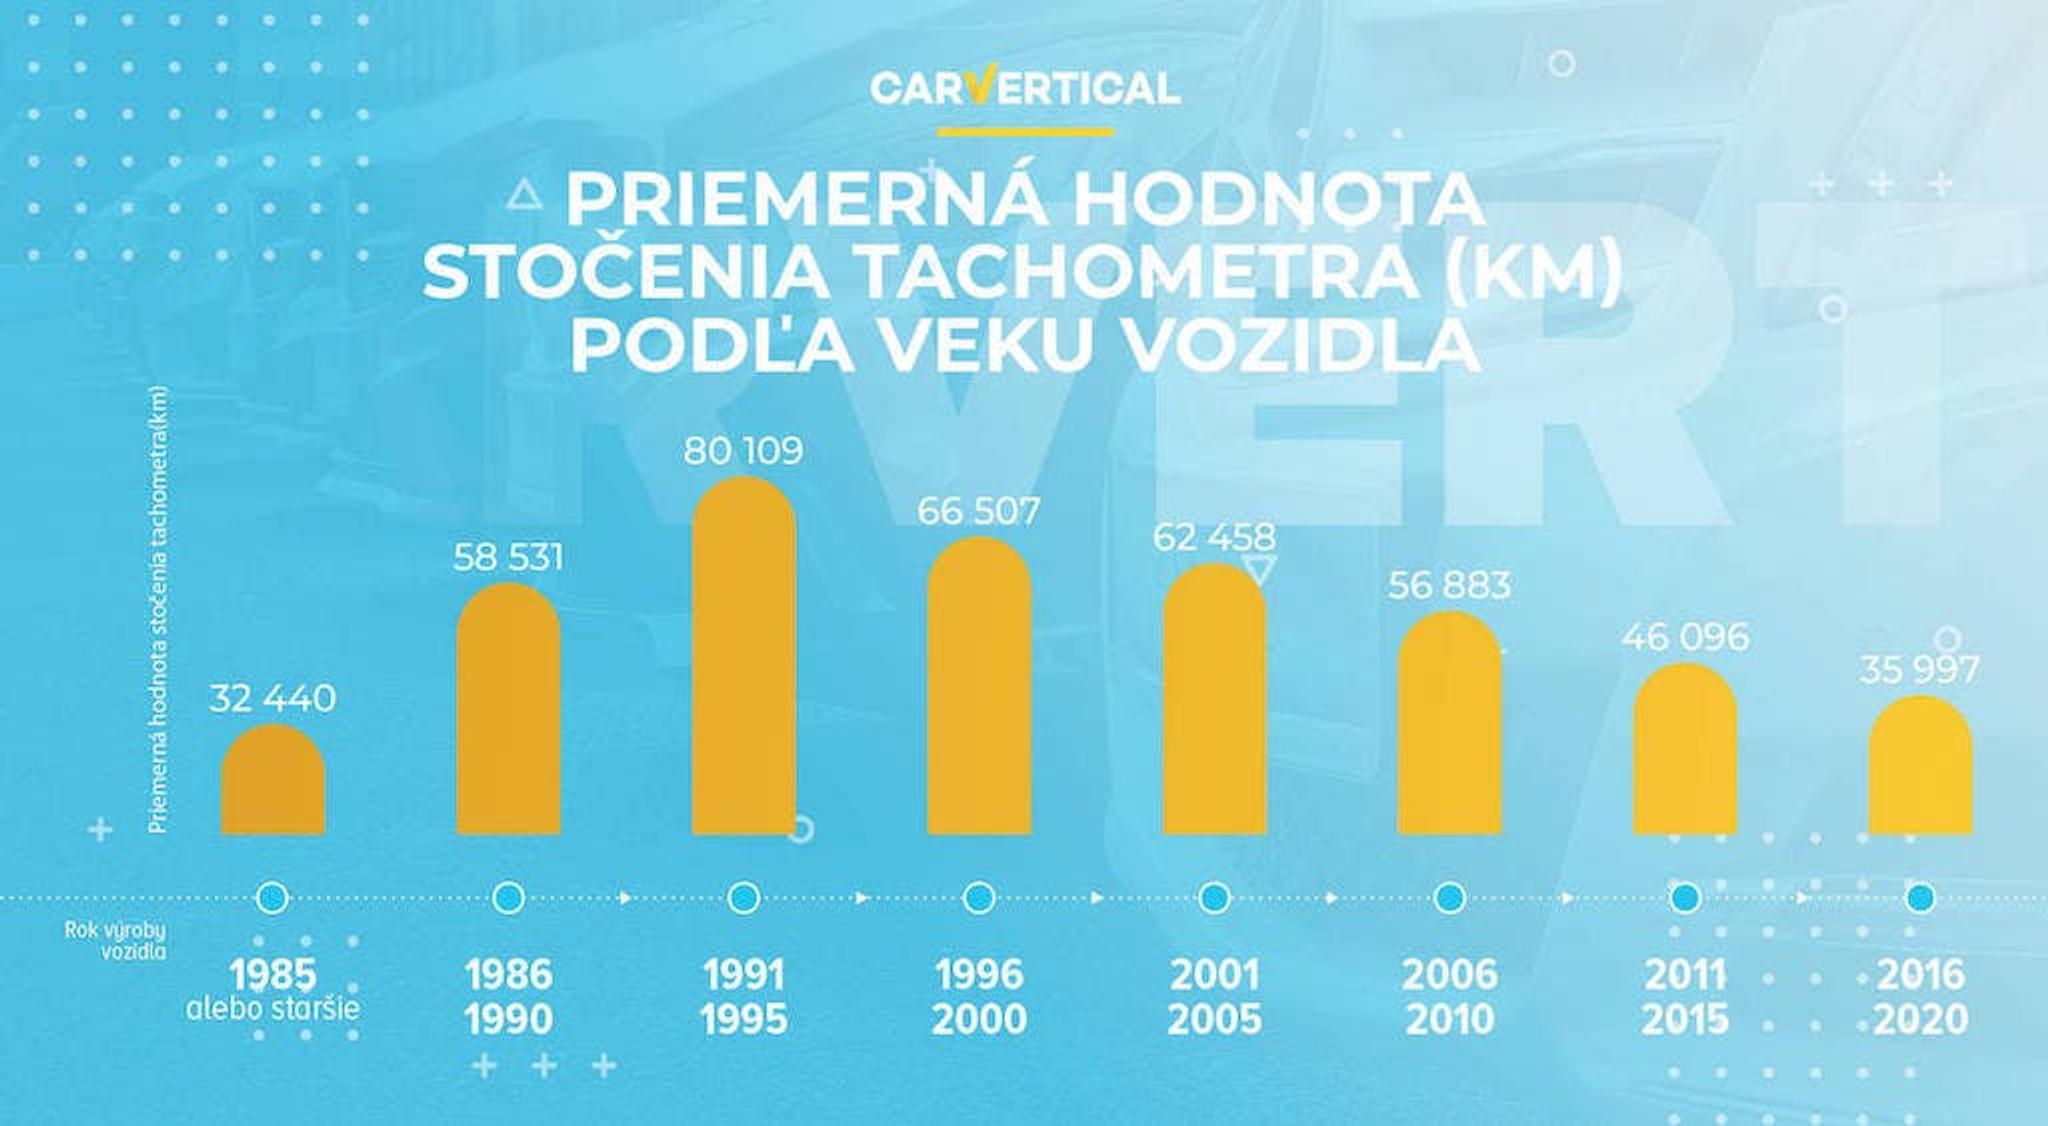 Priemerna hodnota stocenia tachometra (km) podla veku vozidla